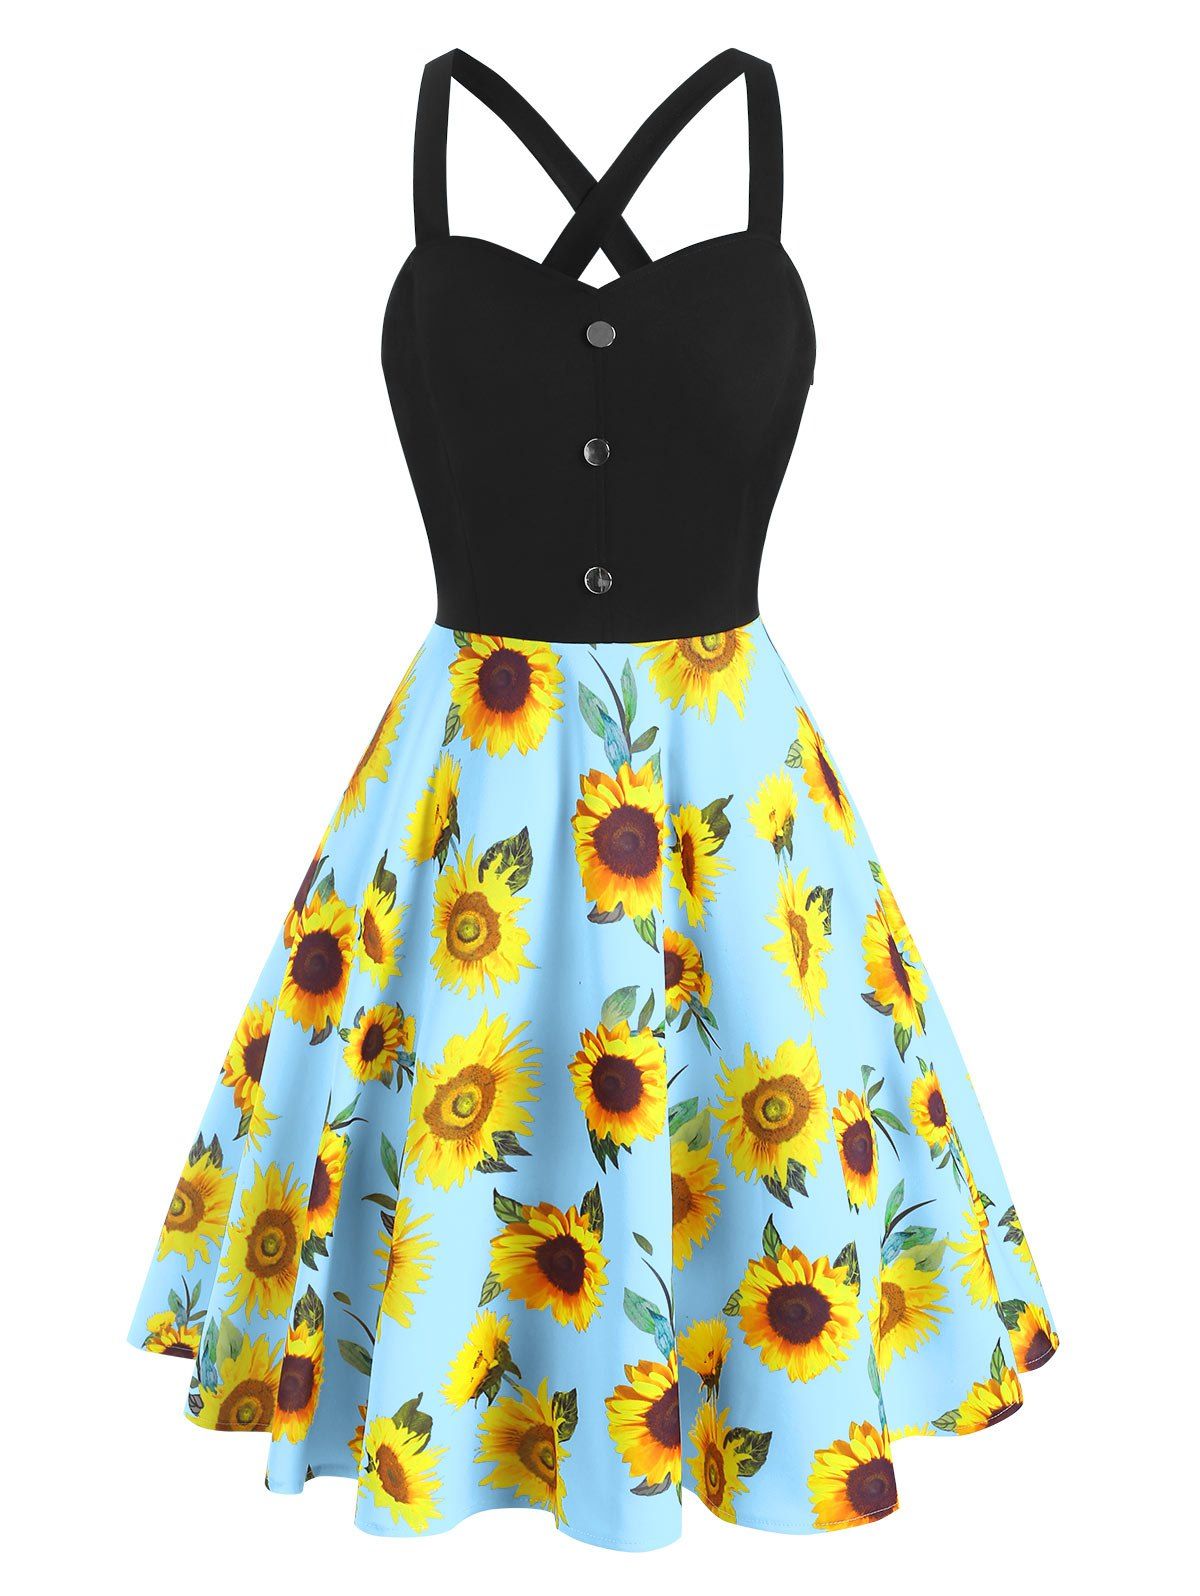 Sunflower Print Sundress Crossover Mock Button A Line Summer Dress - LIGHT BLUE XL